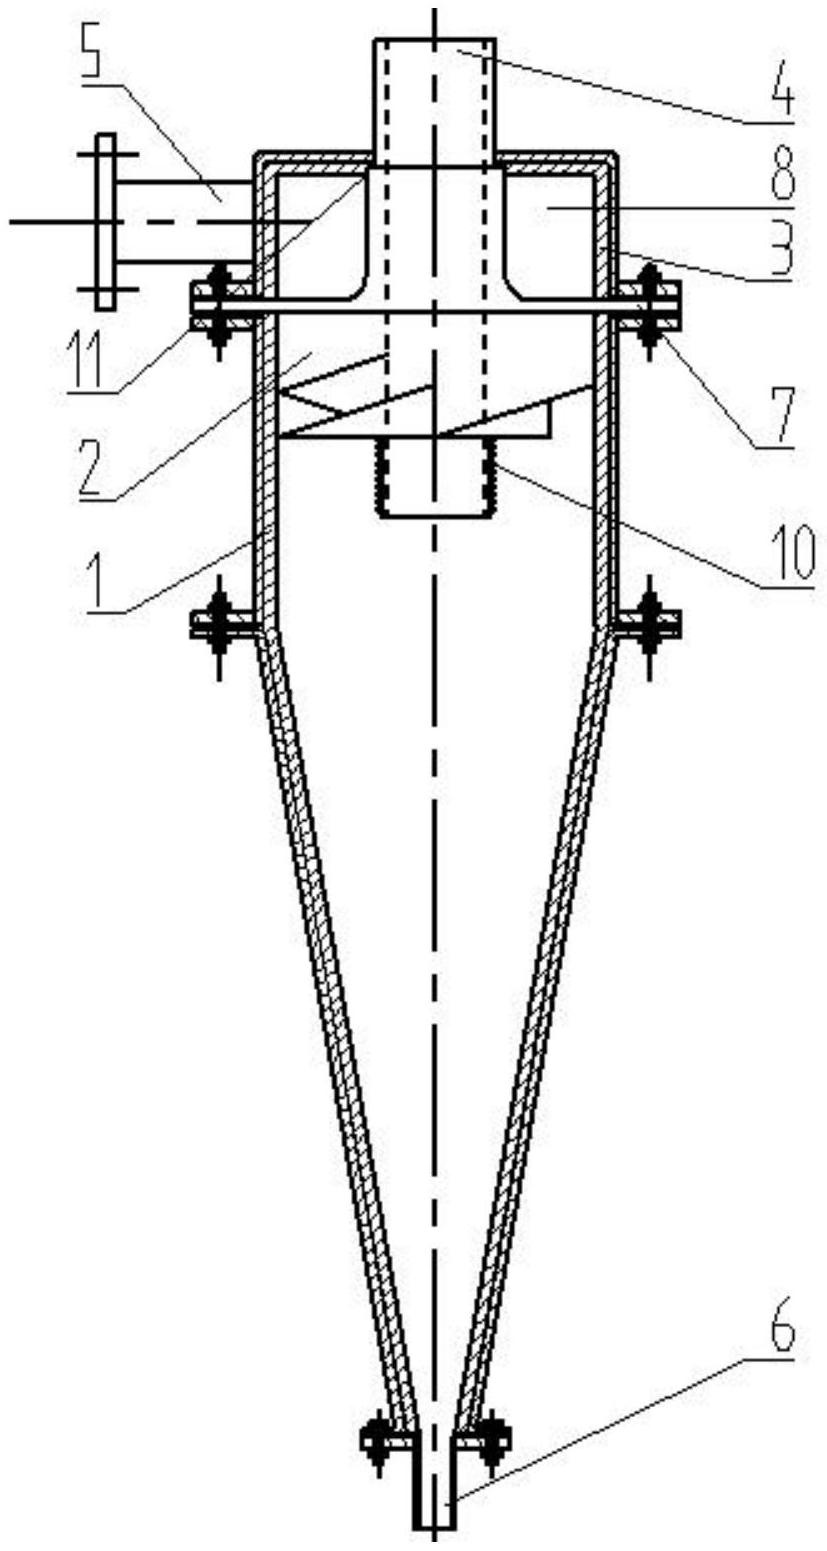 调节双螺旋进水路水力旋流器,在原有的锥形体上部开口处插入一导流器